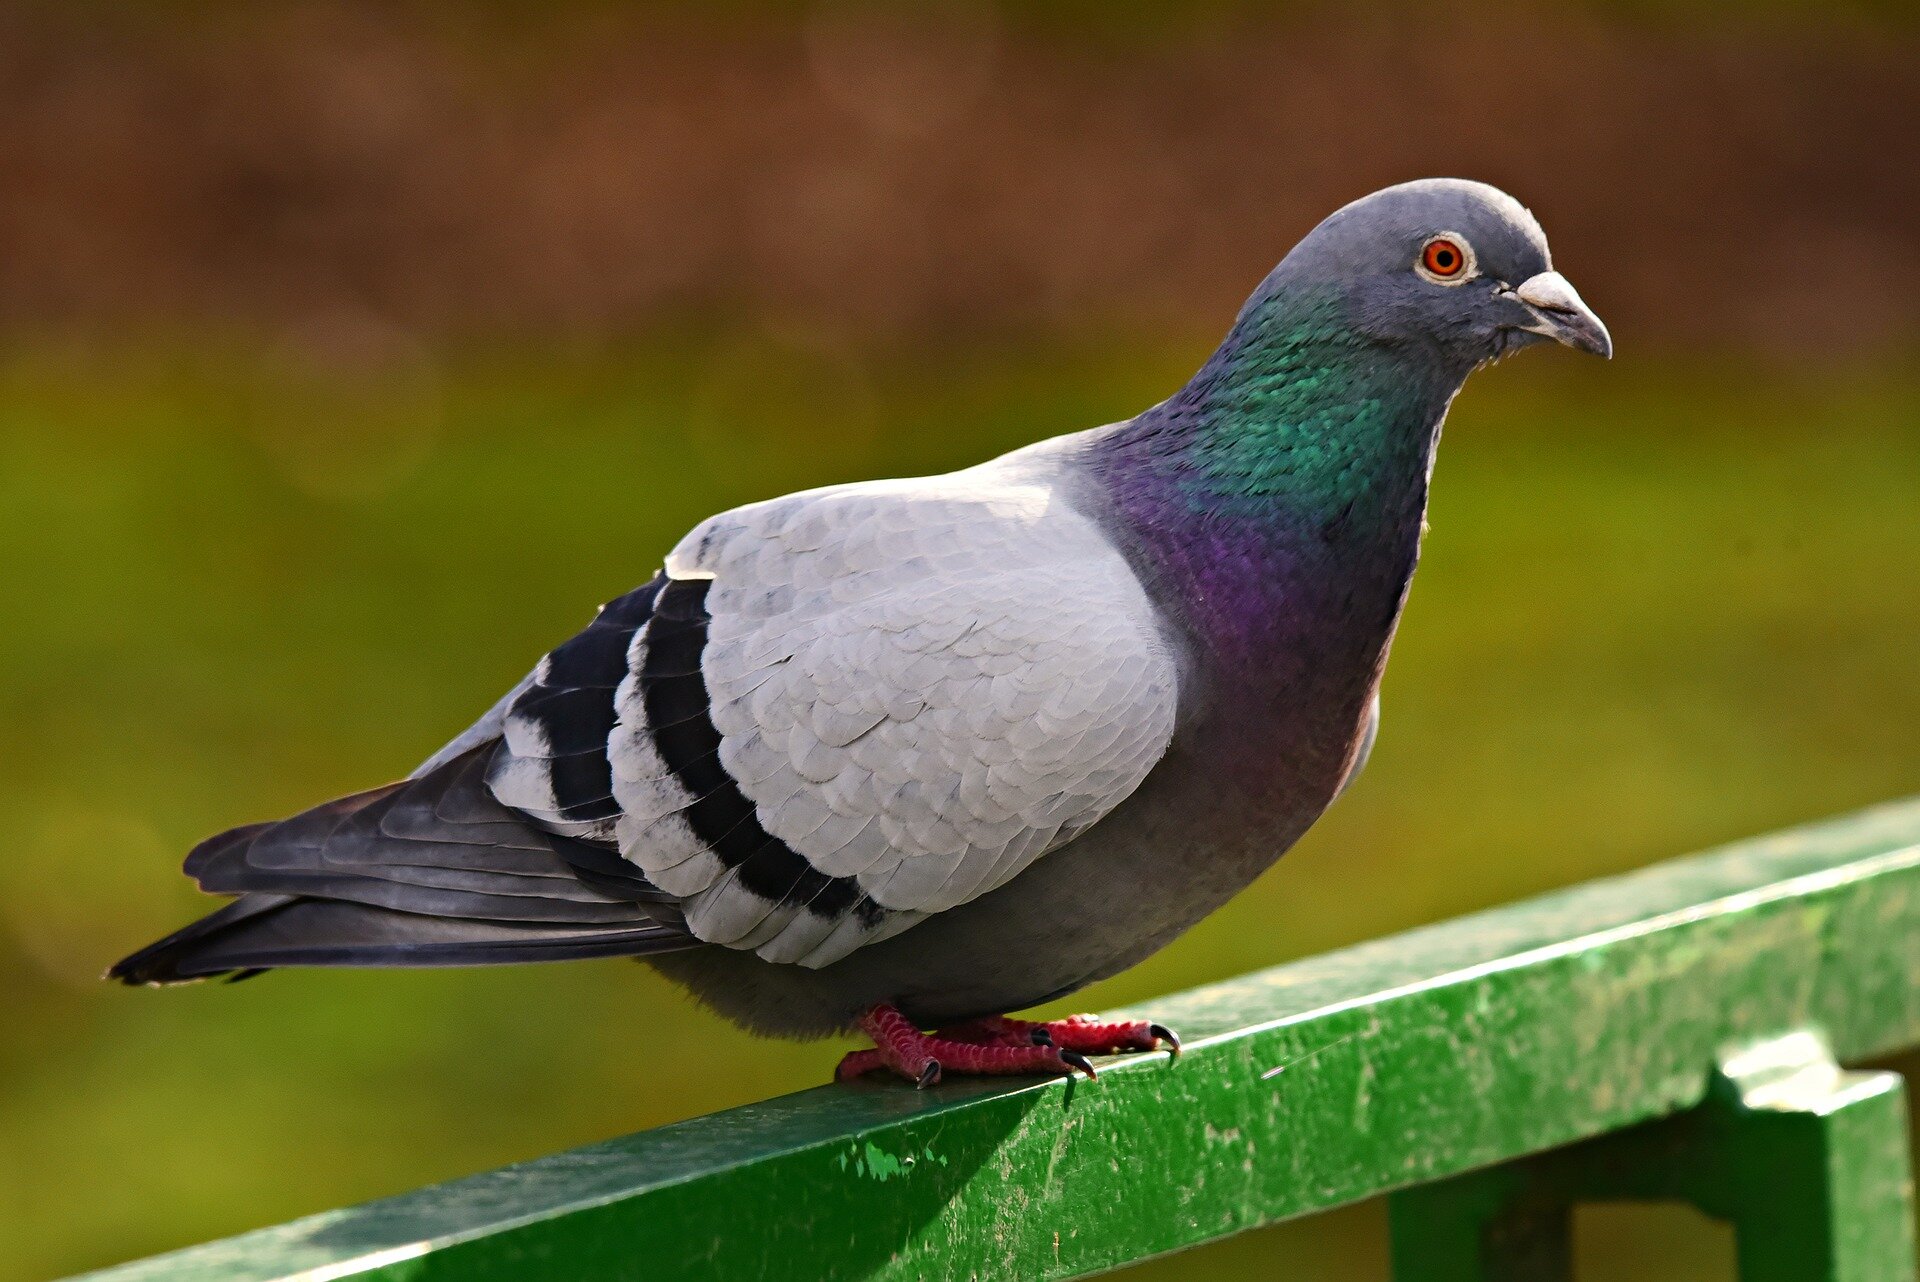 Kolorowa fotografia przedstawia gołębia siedzącego na ogrodzeniu.